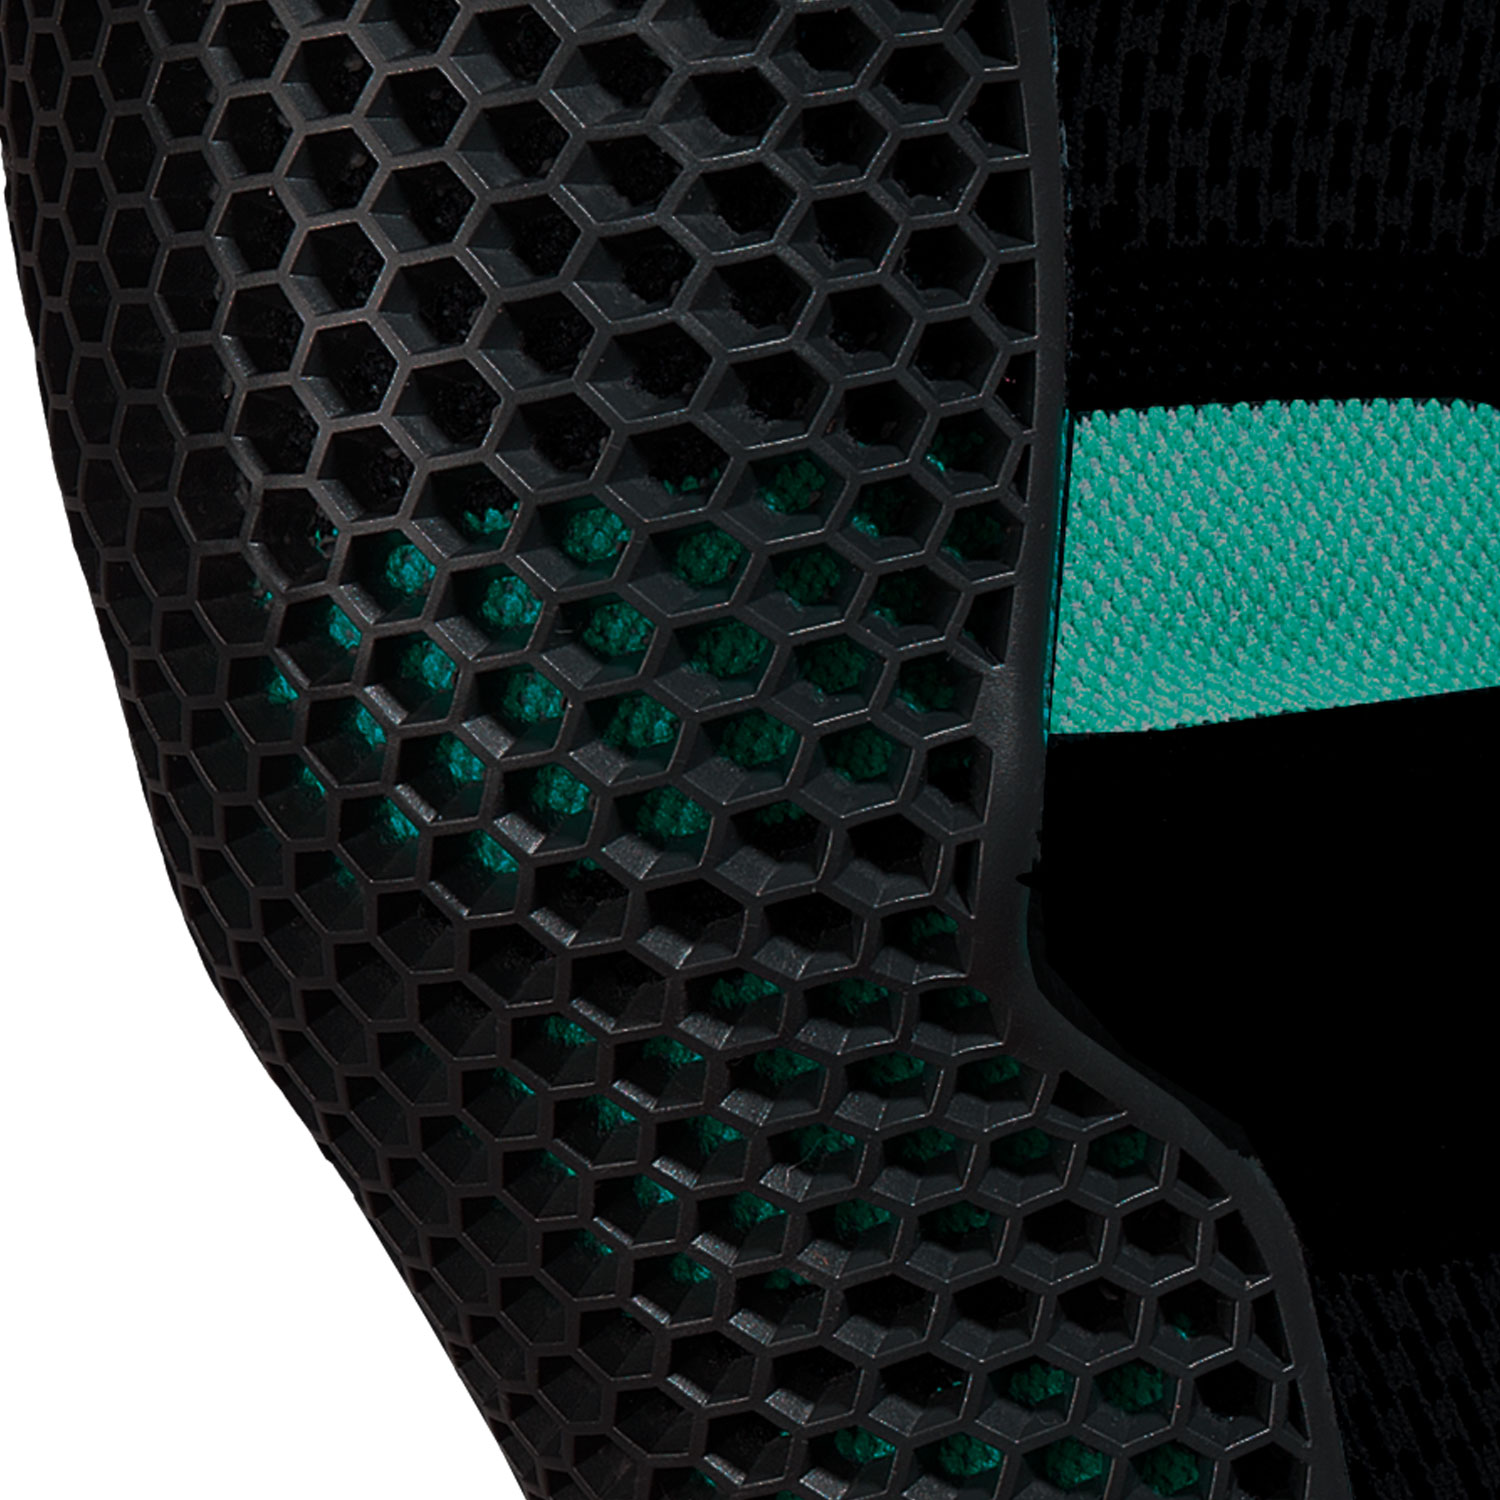 Защита колена Amplifi 2021-22 MKX Knee Black/Turquoise